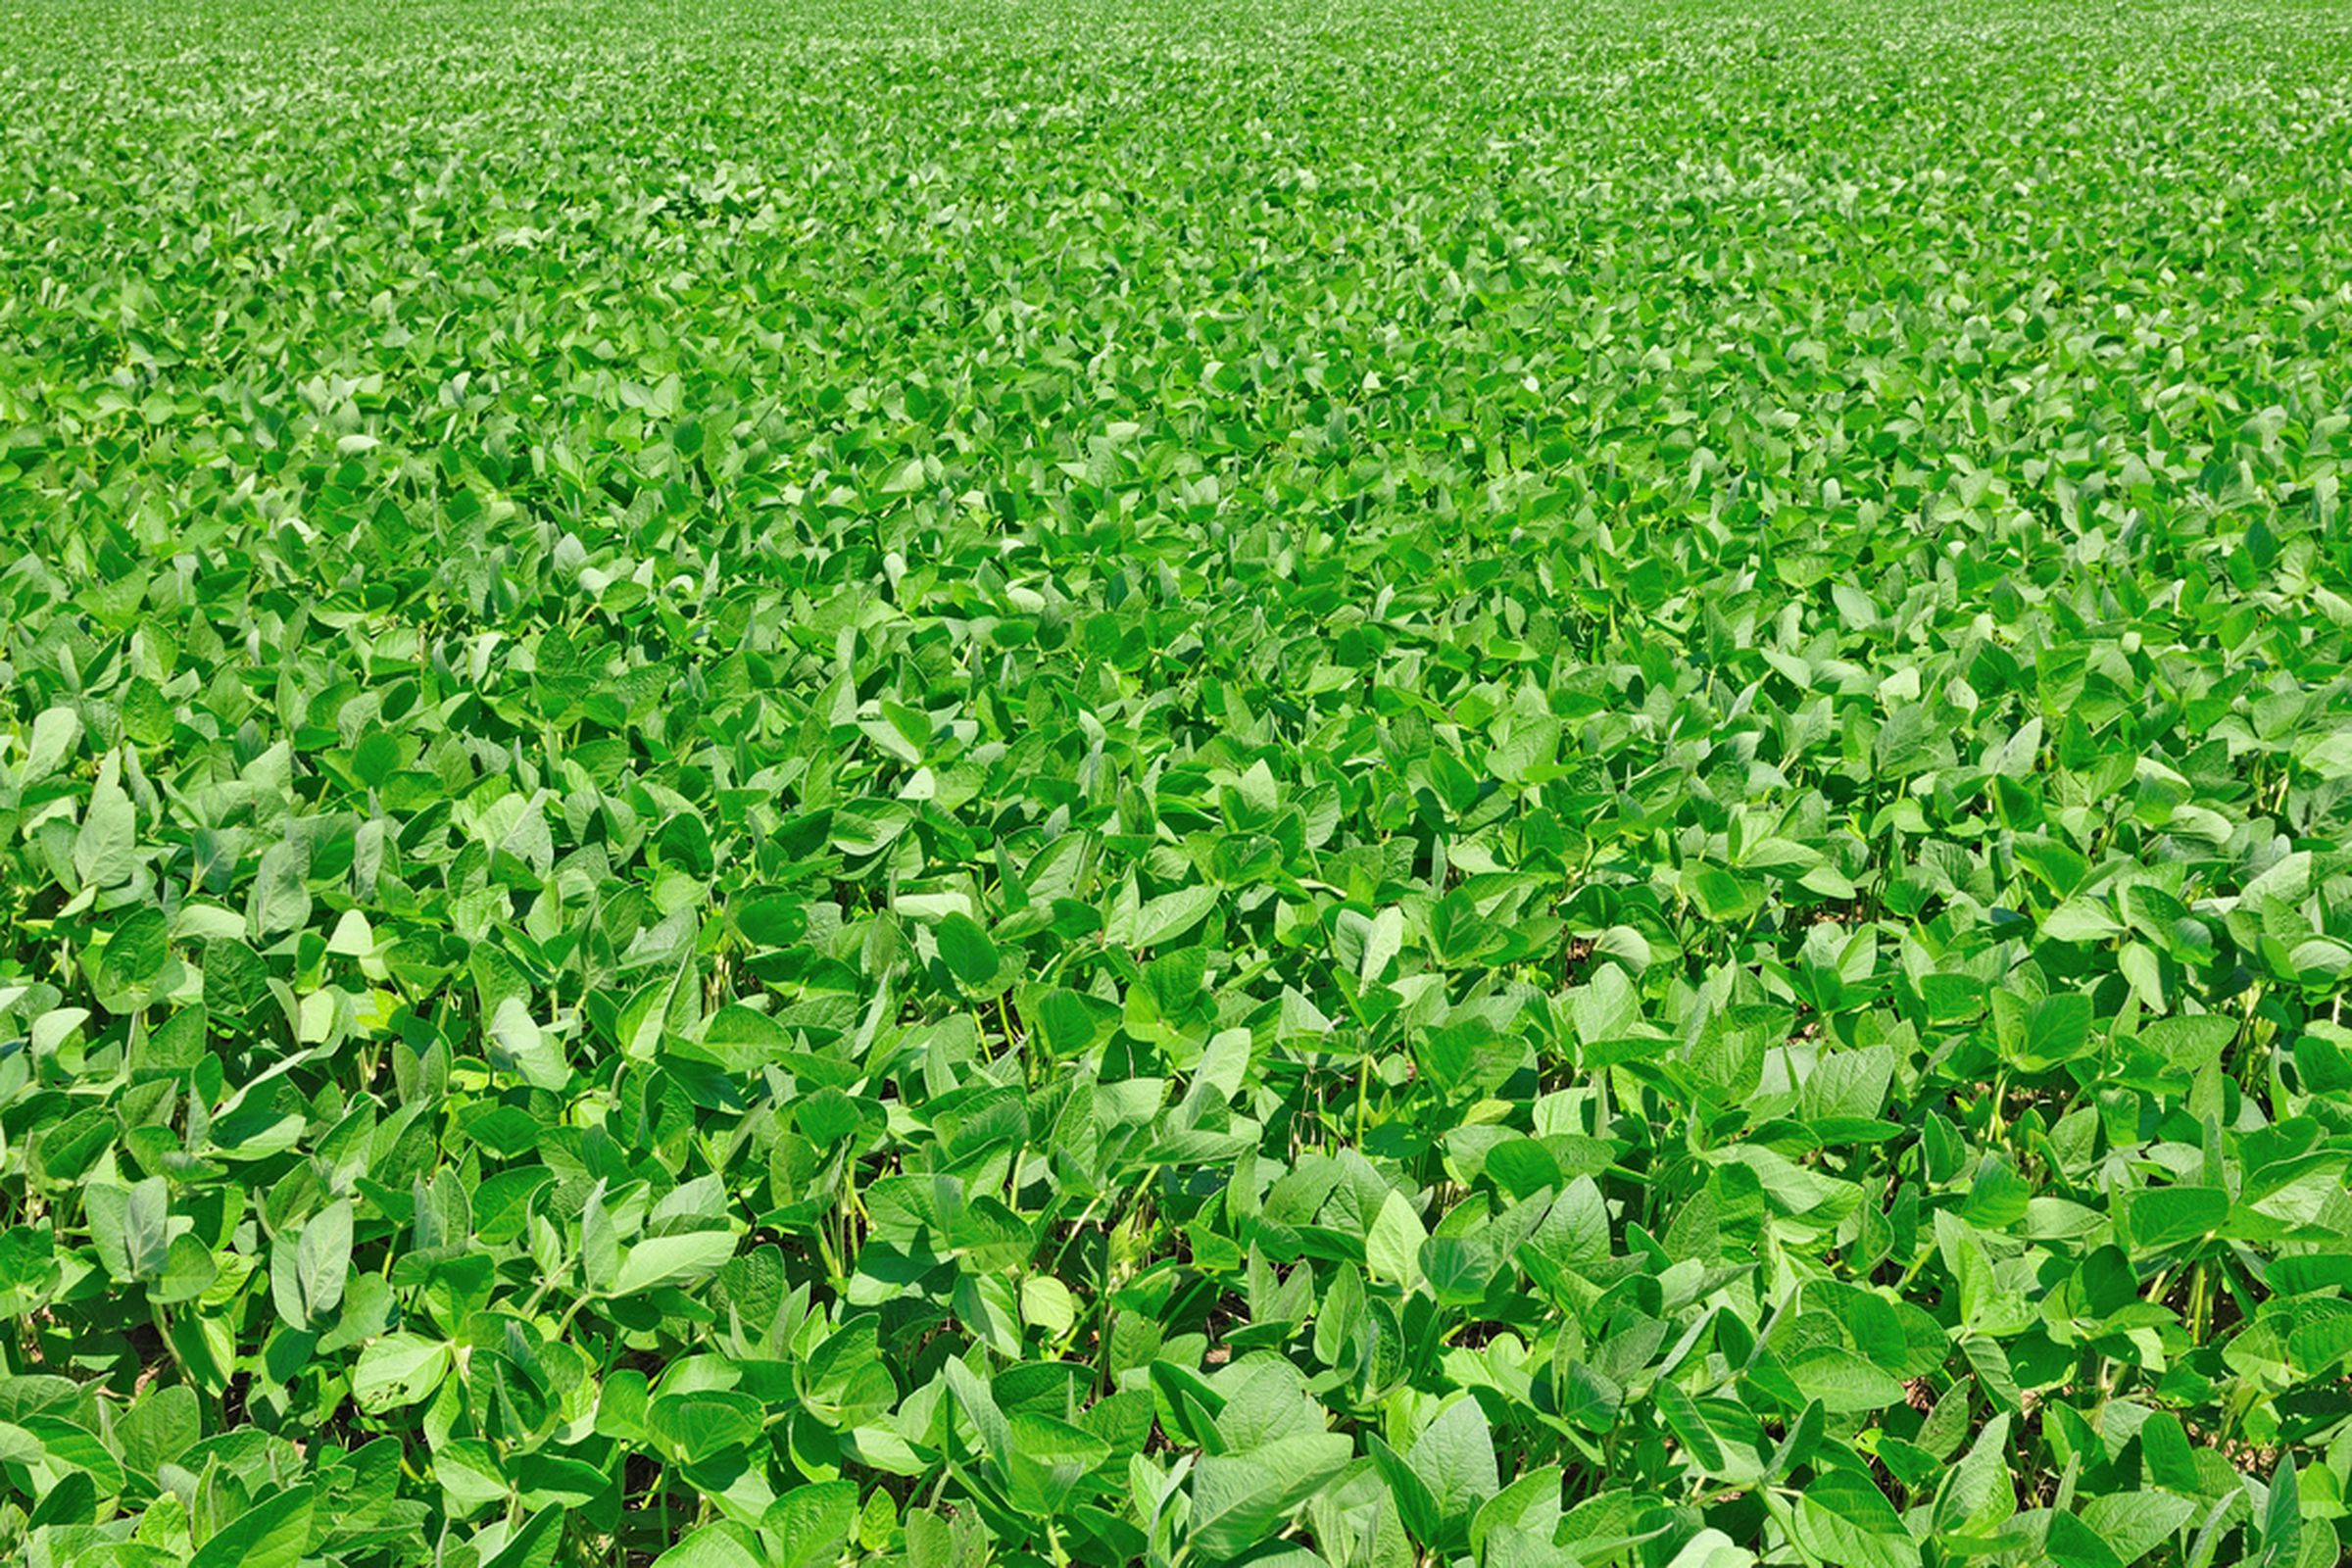 soybean field (press image)